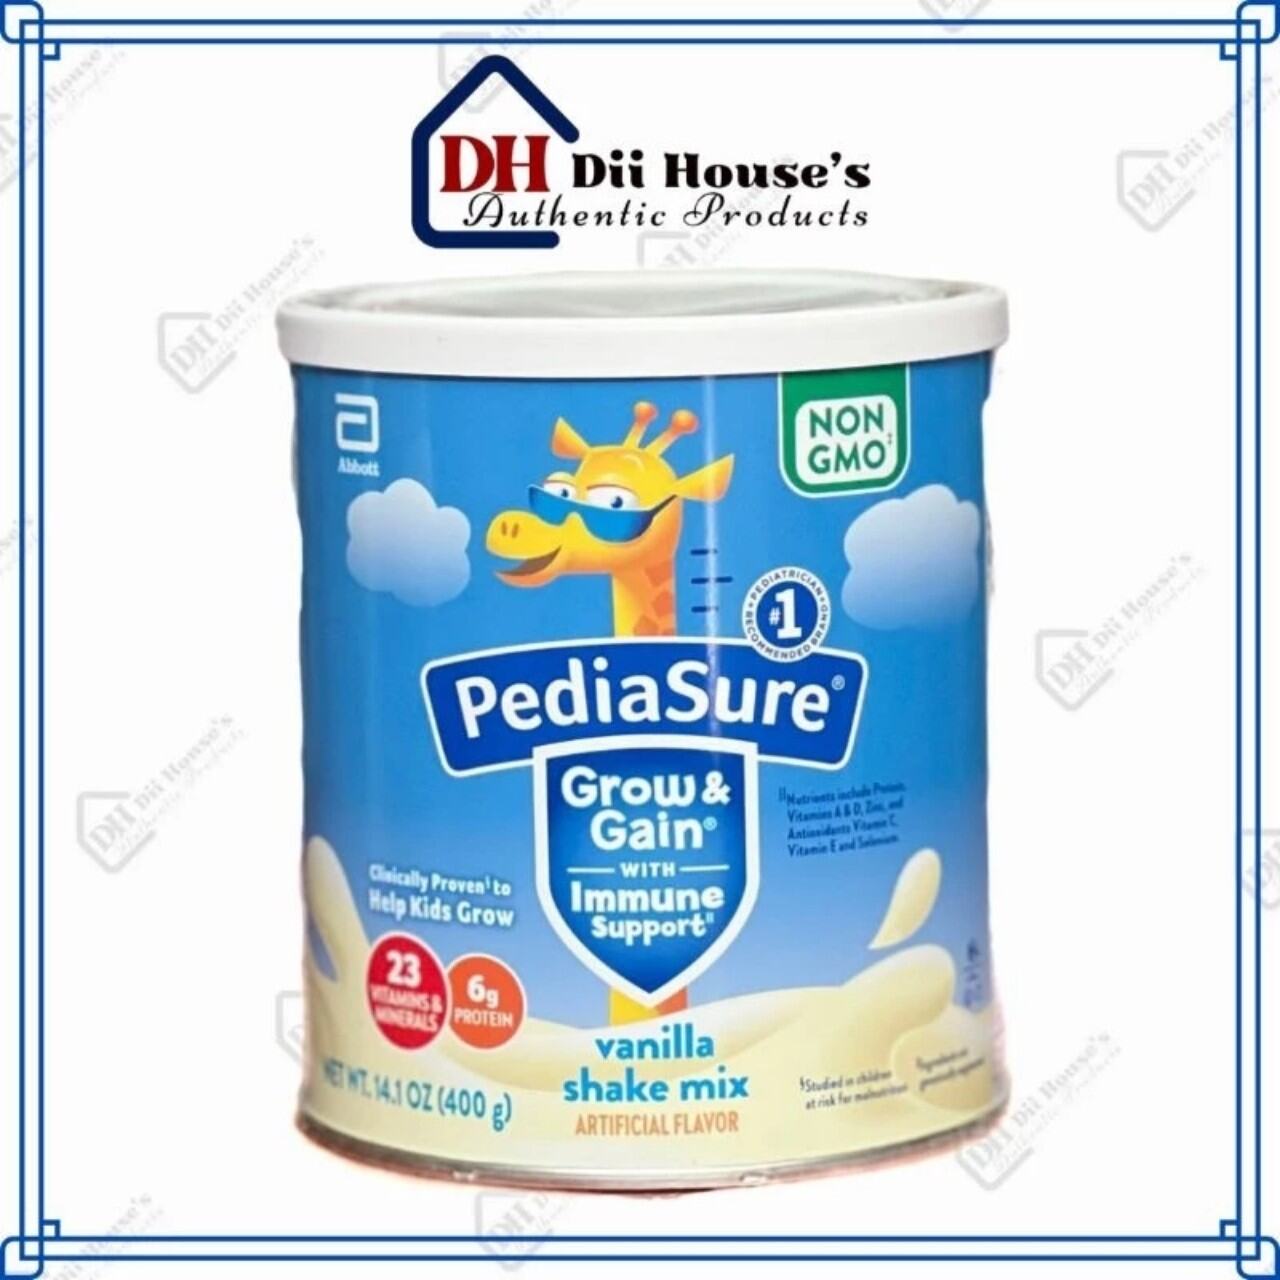 Pediasure Grow & Gain Vanilla 400g - Sữa Bột Pediasure Hươu Cao Cổ hàng Mỹ.